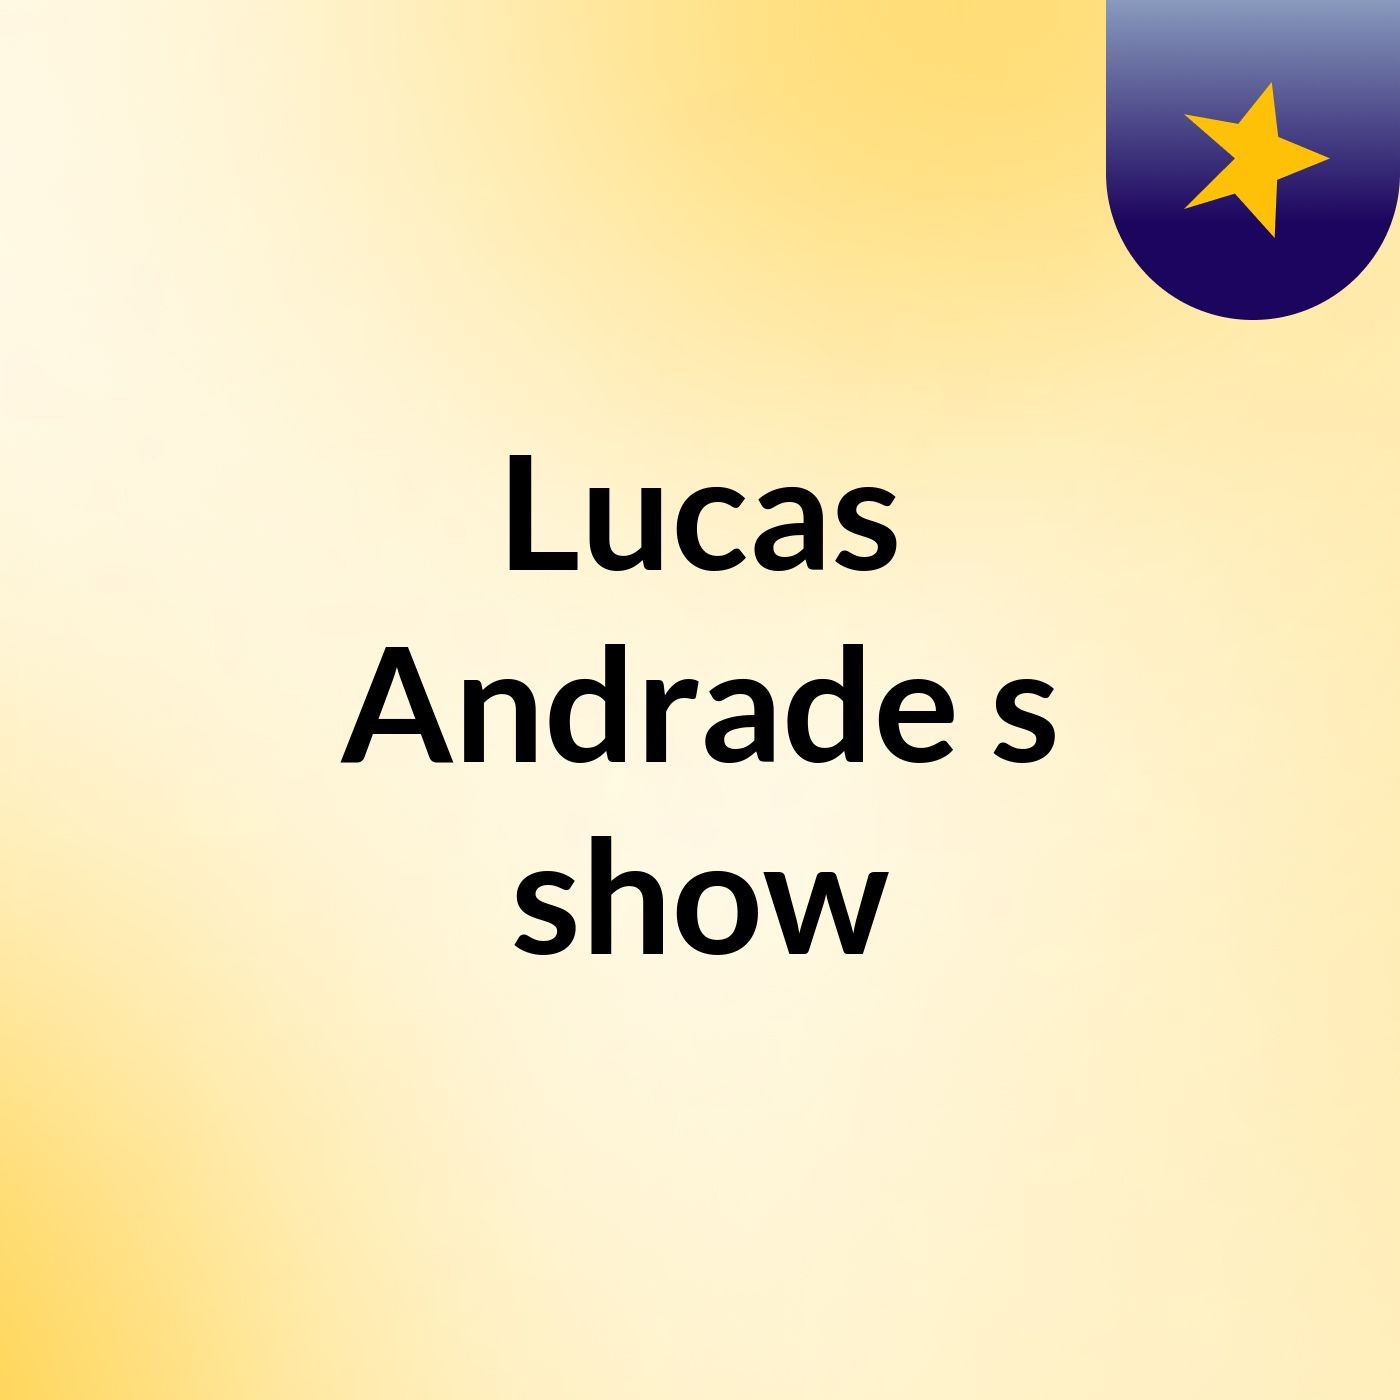 Lucas Andrade's show